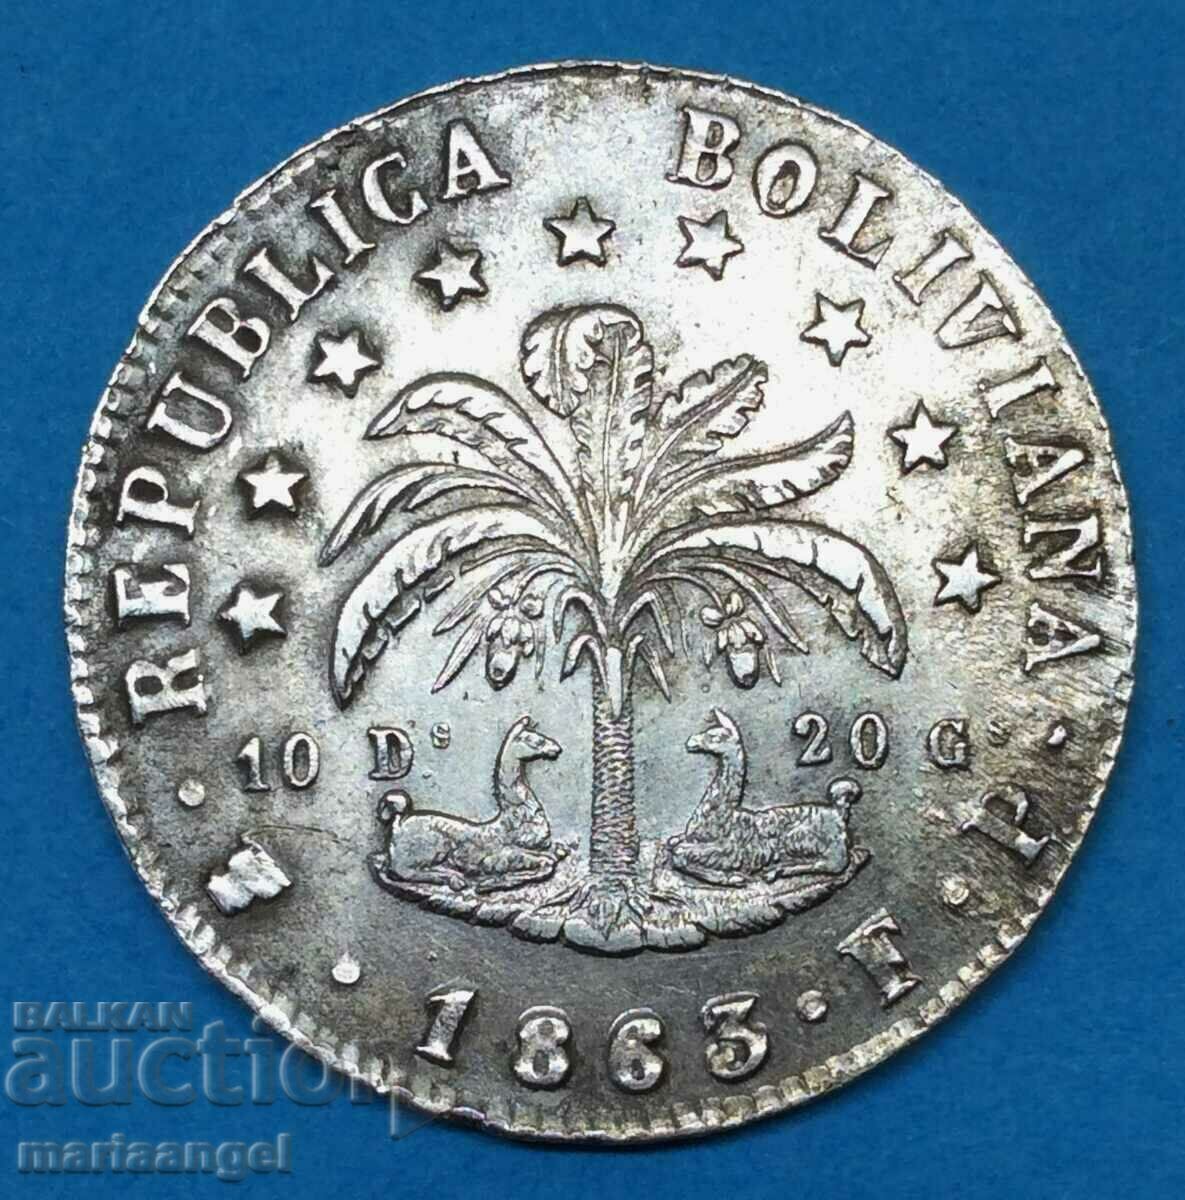 Bolivia 1863 8 sol Thaler 19.40g 36mm argint